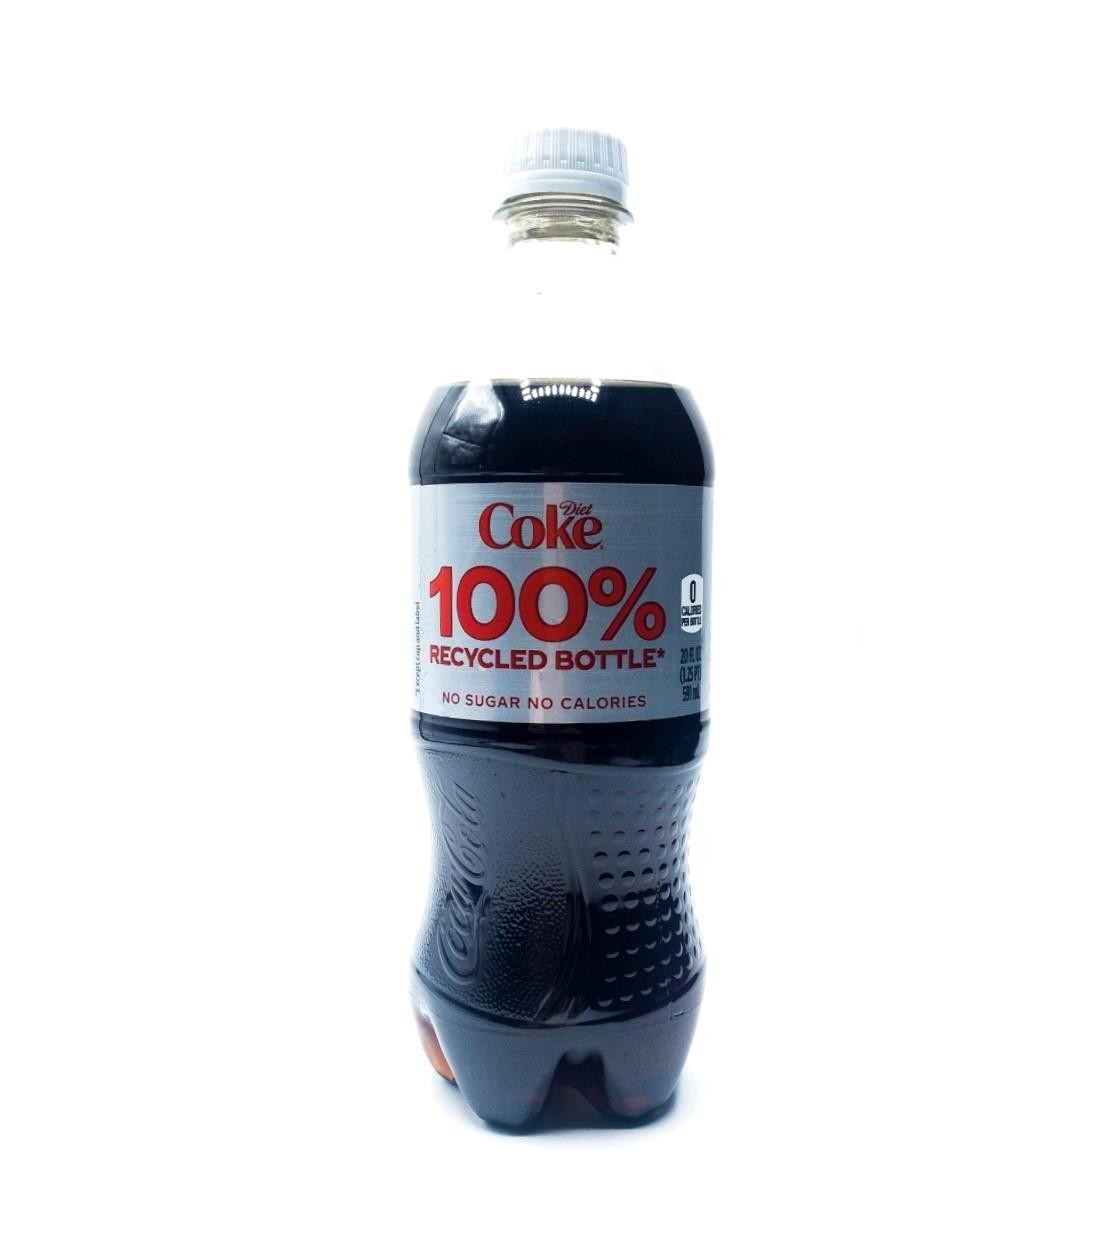 20oz Diet Coke Bottle